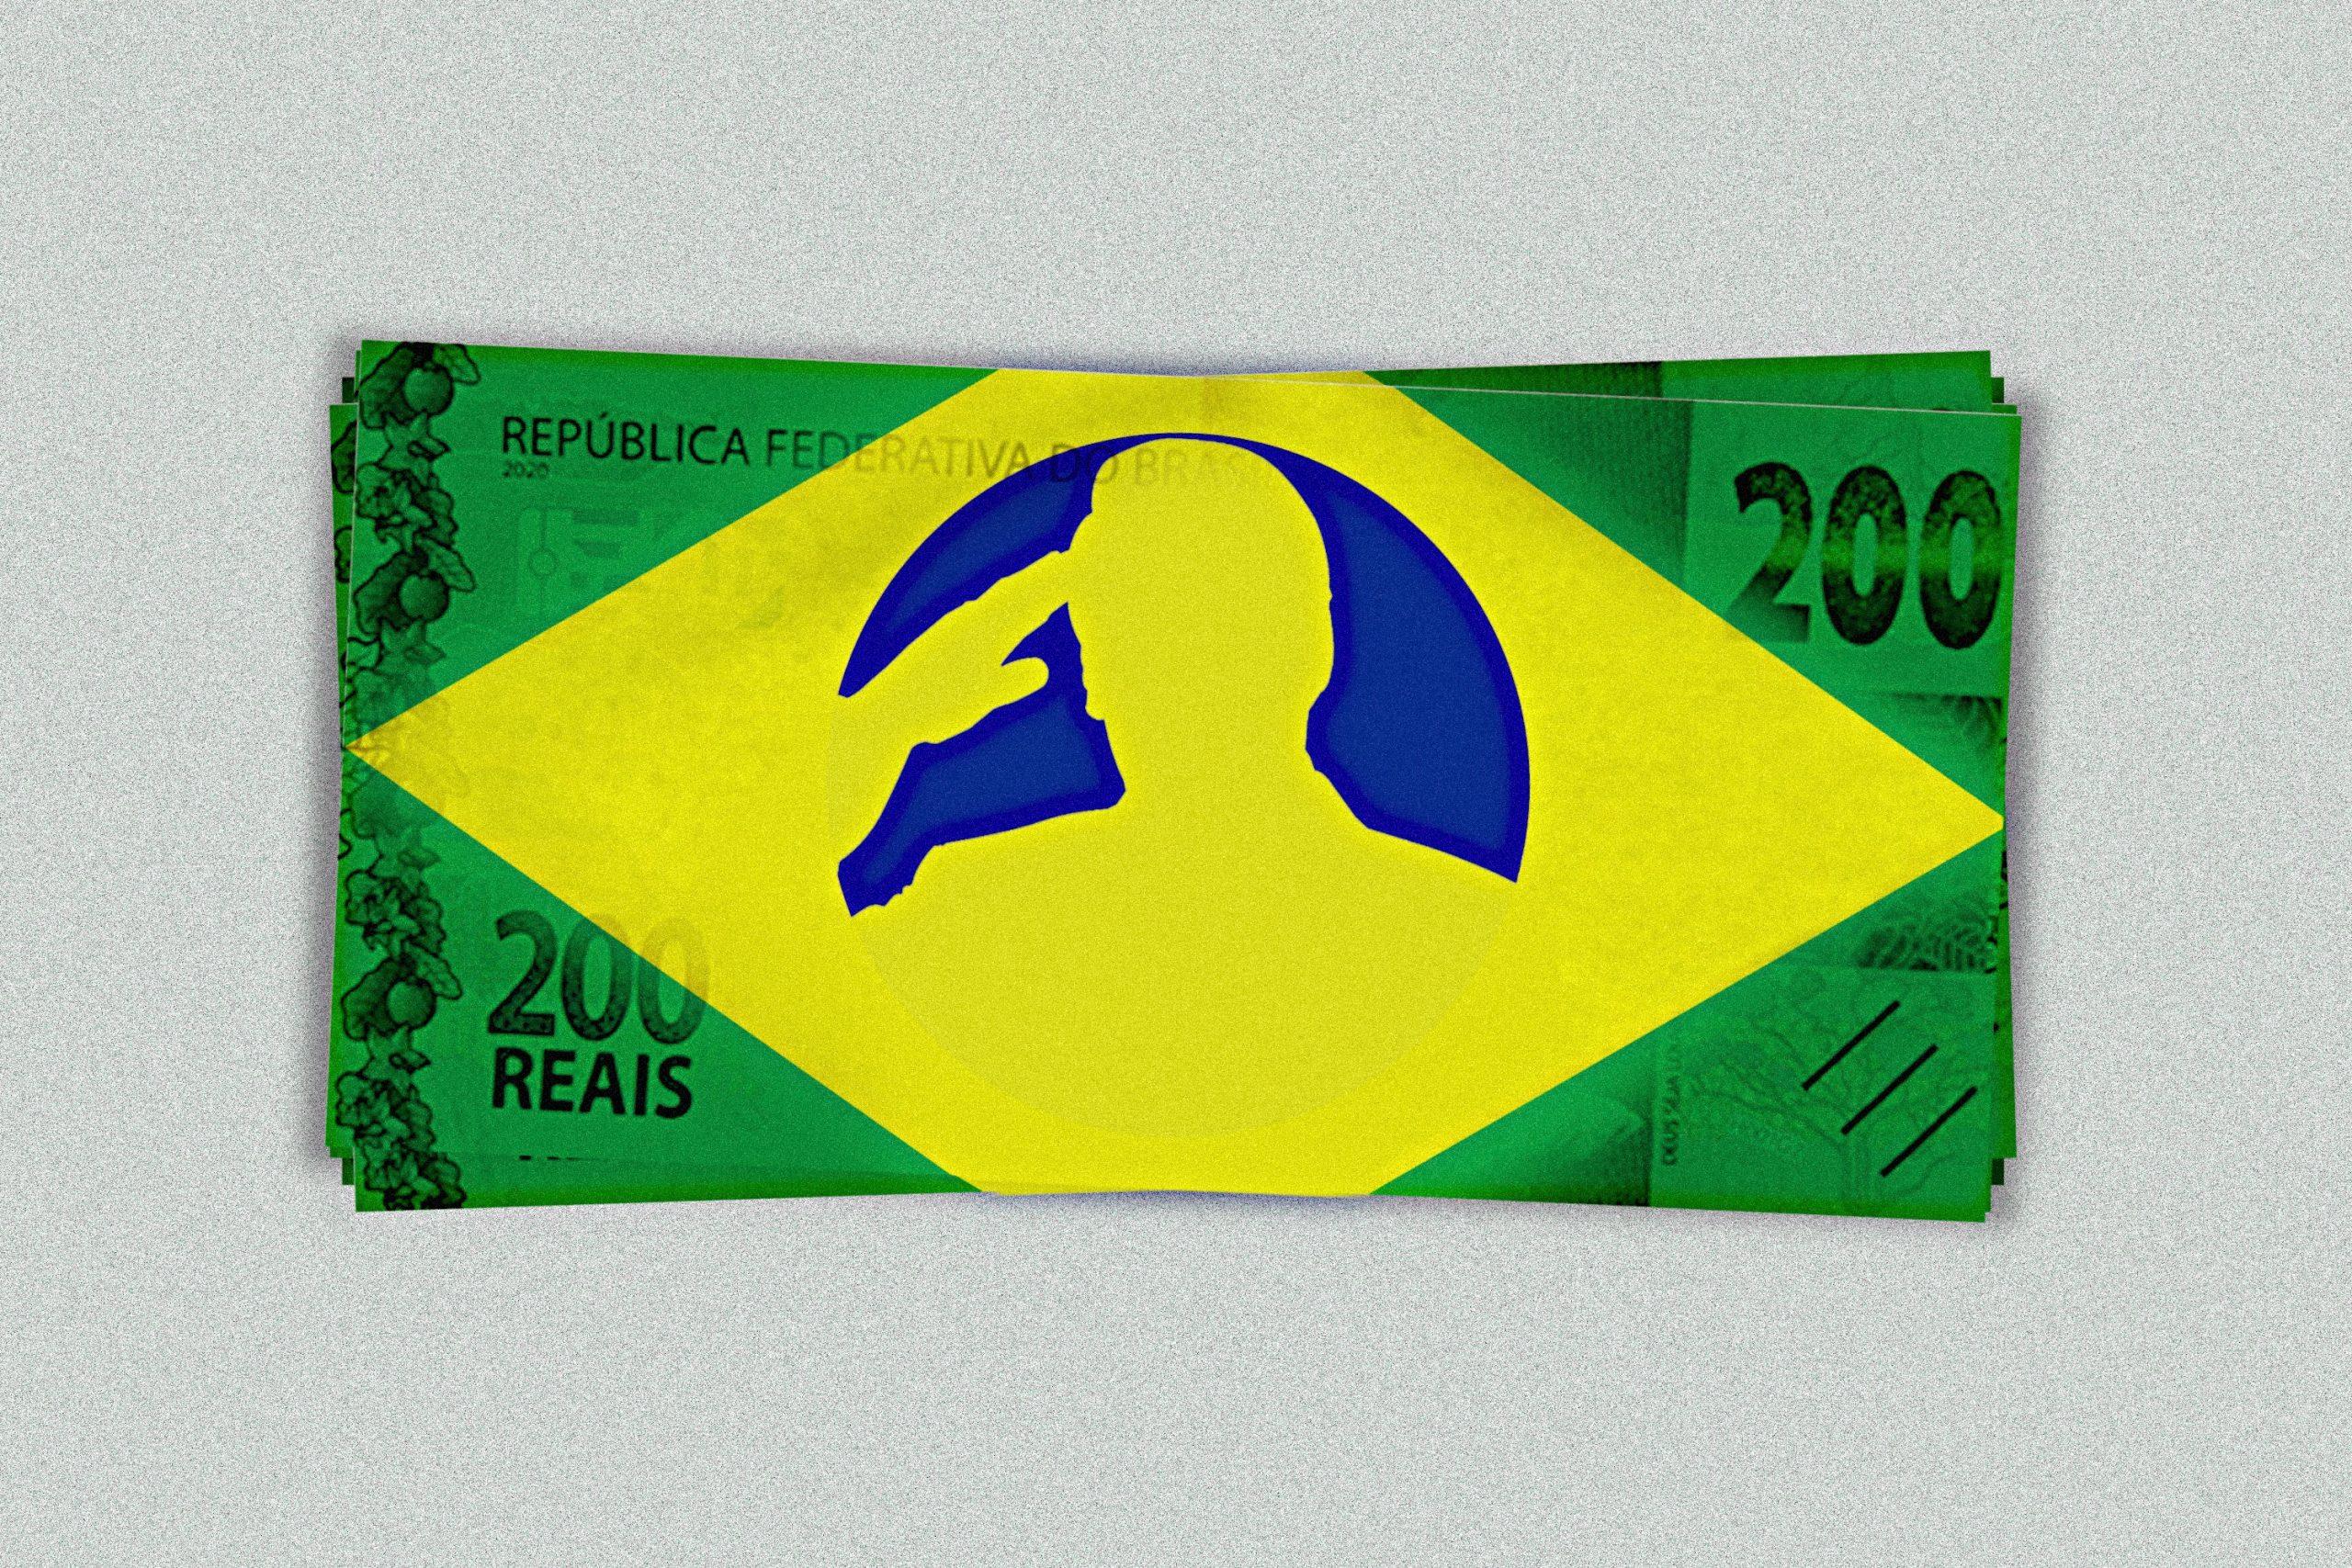 Ilustração de uma nota de 200 reais com as cores da bandeira do Brasil e a silhueta de Bolsonaro a fazer continência ao centro.